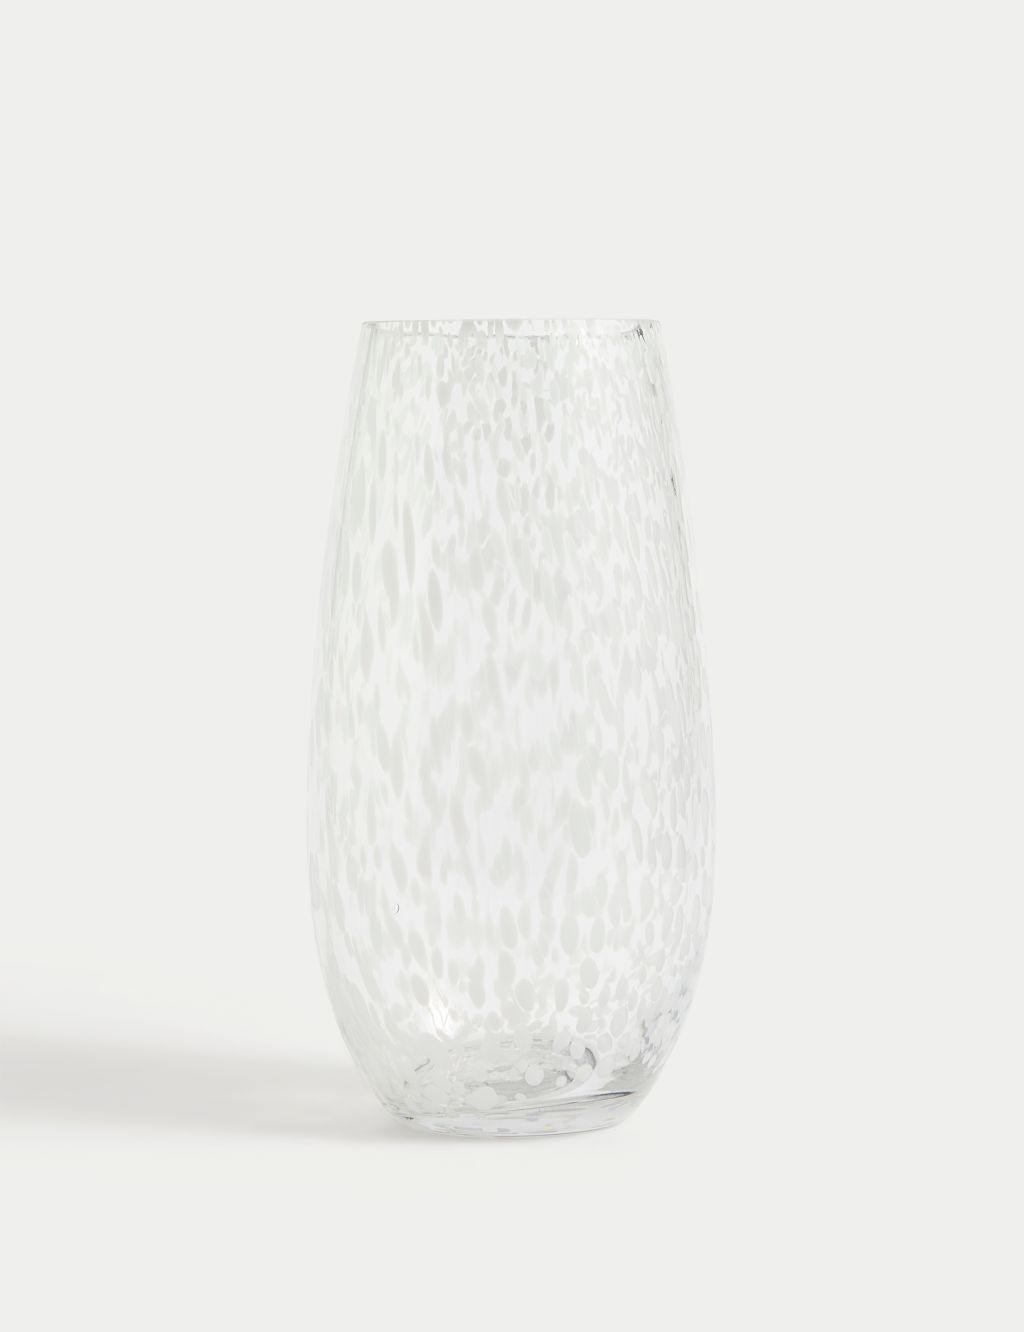 Confetti Glass Vase 1 of 4